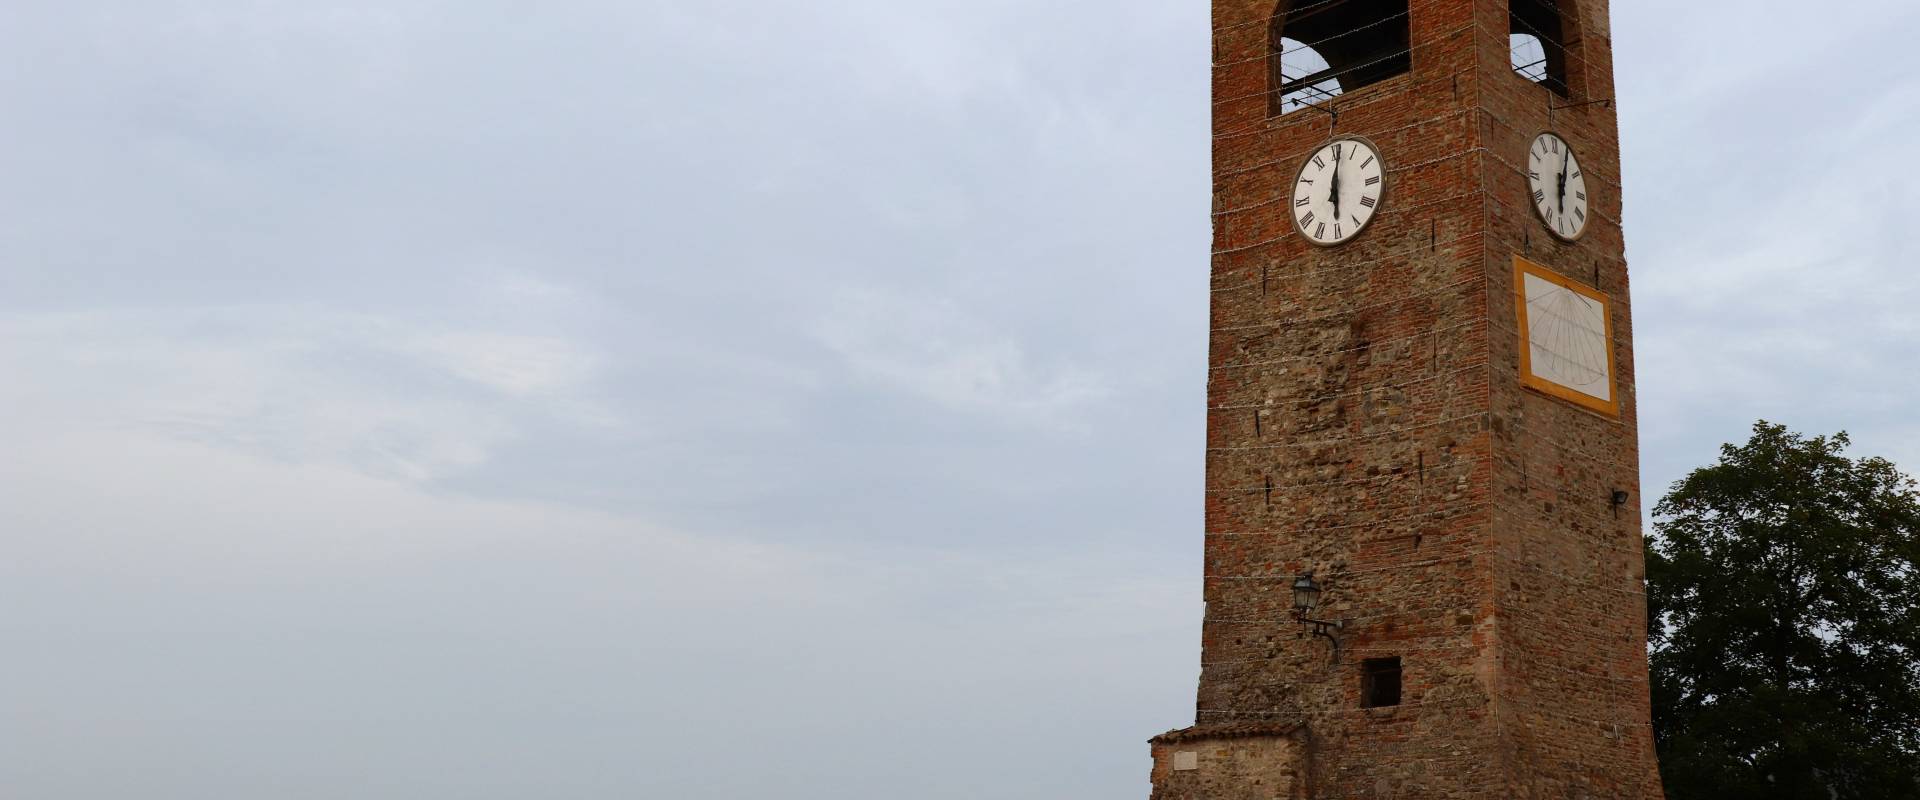 Torre dell'Orologio - Castelvetro di Modena photo by Vale.Rossi88